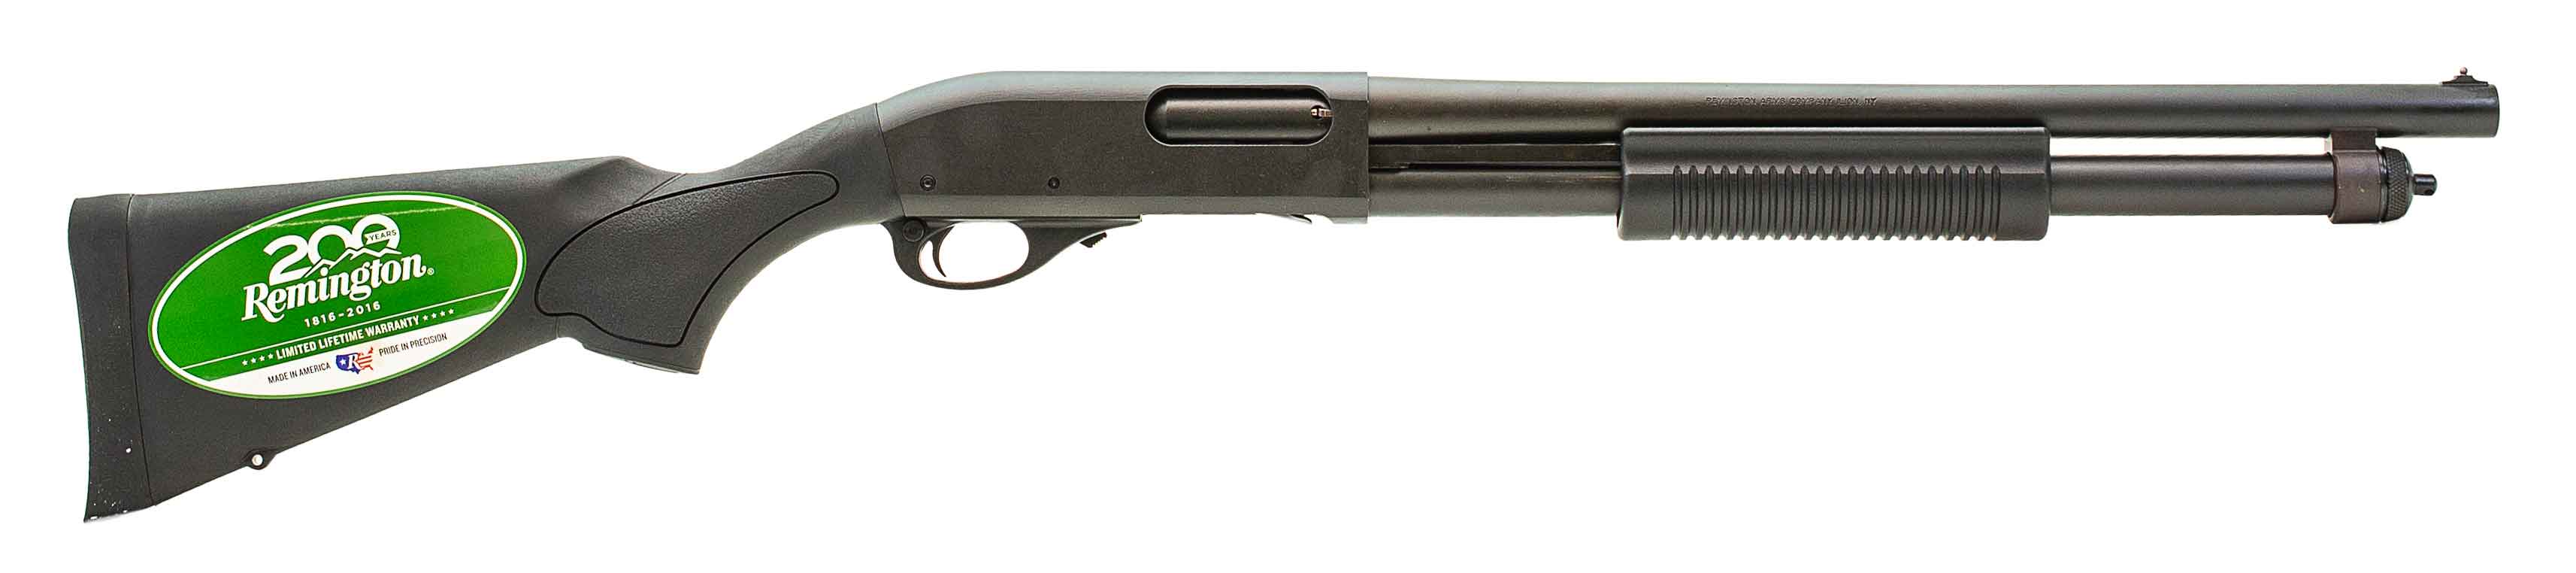 remington 870 express eladó coupon